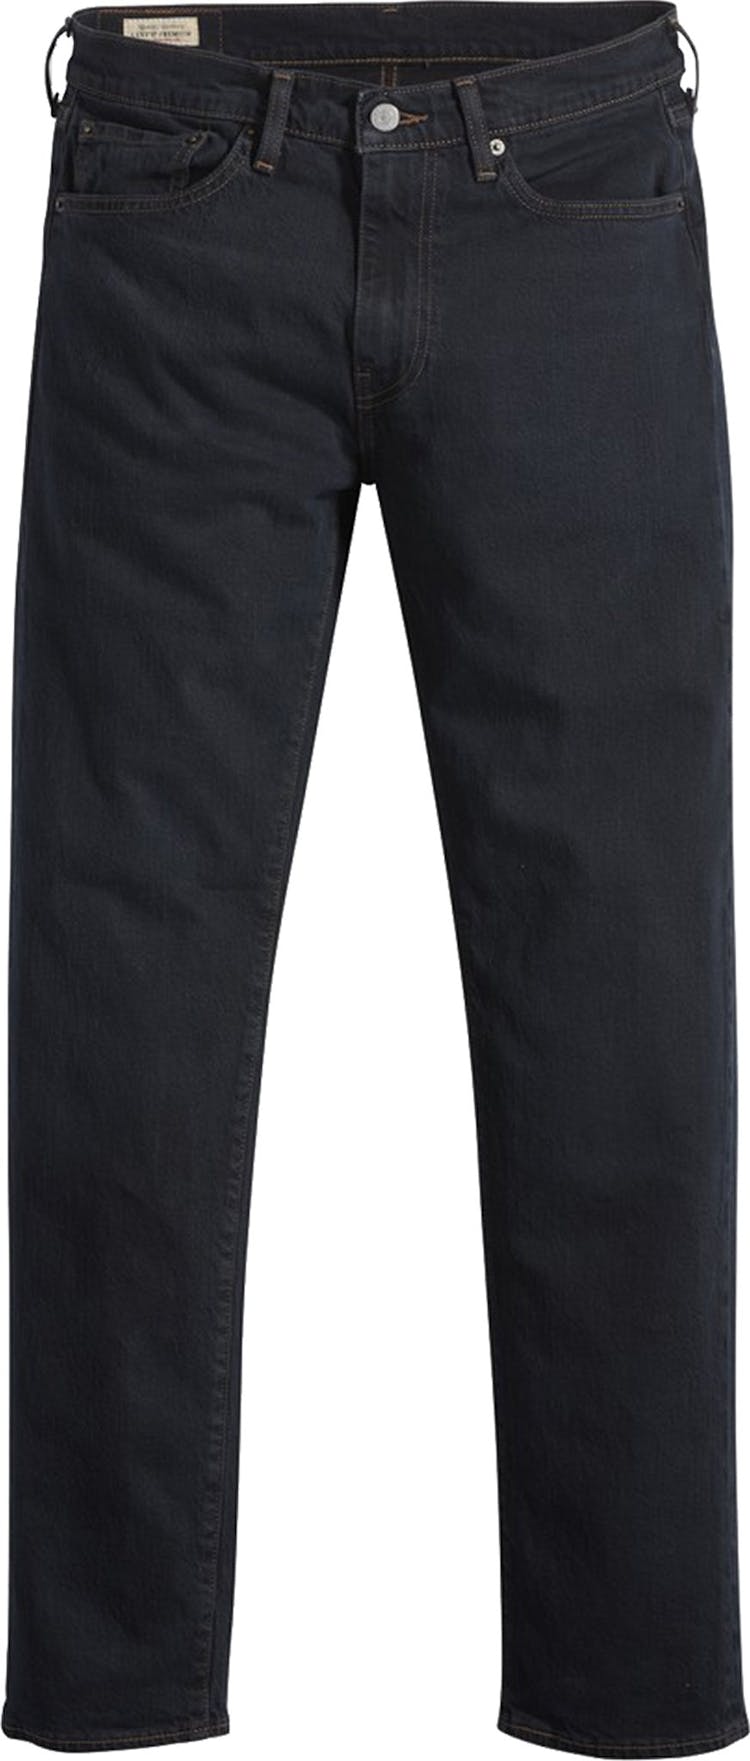 Numéro de l'image de la galerie de produits 1 pour le produit Jeans 512 Slim Taper Fit - Homme